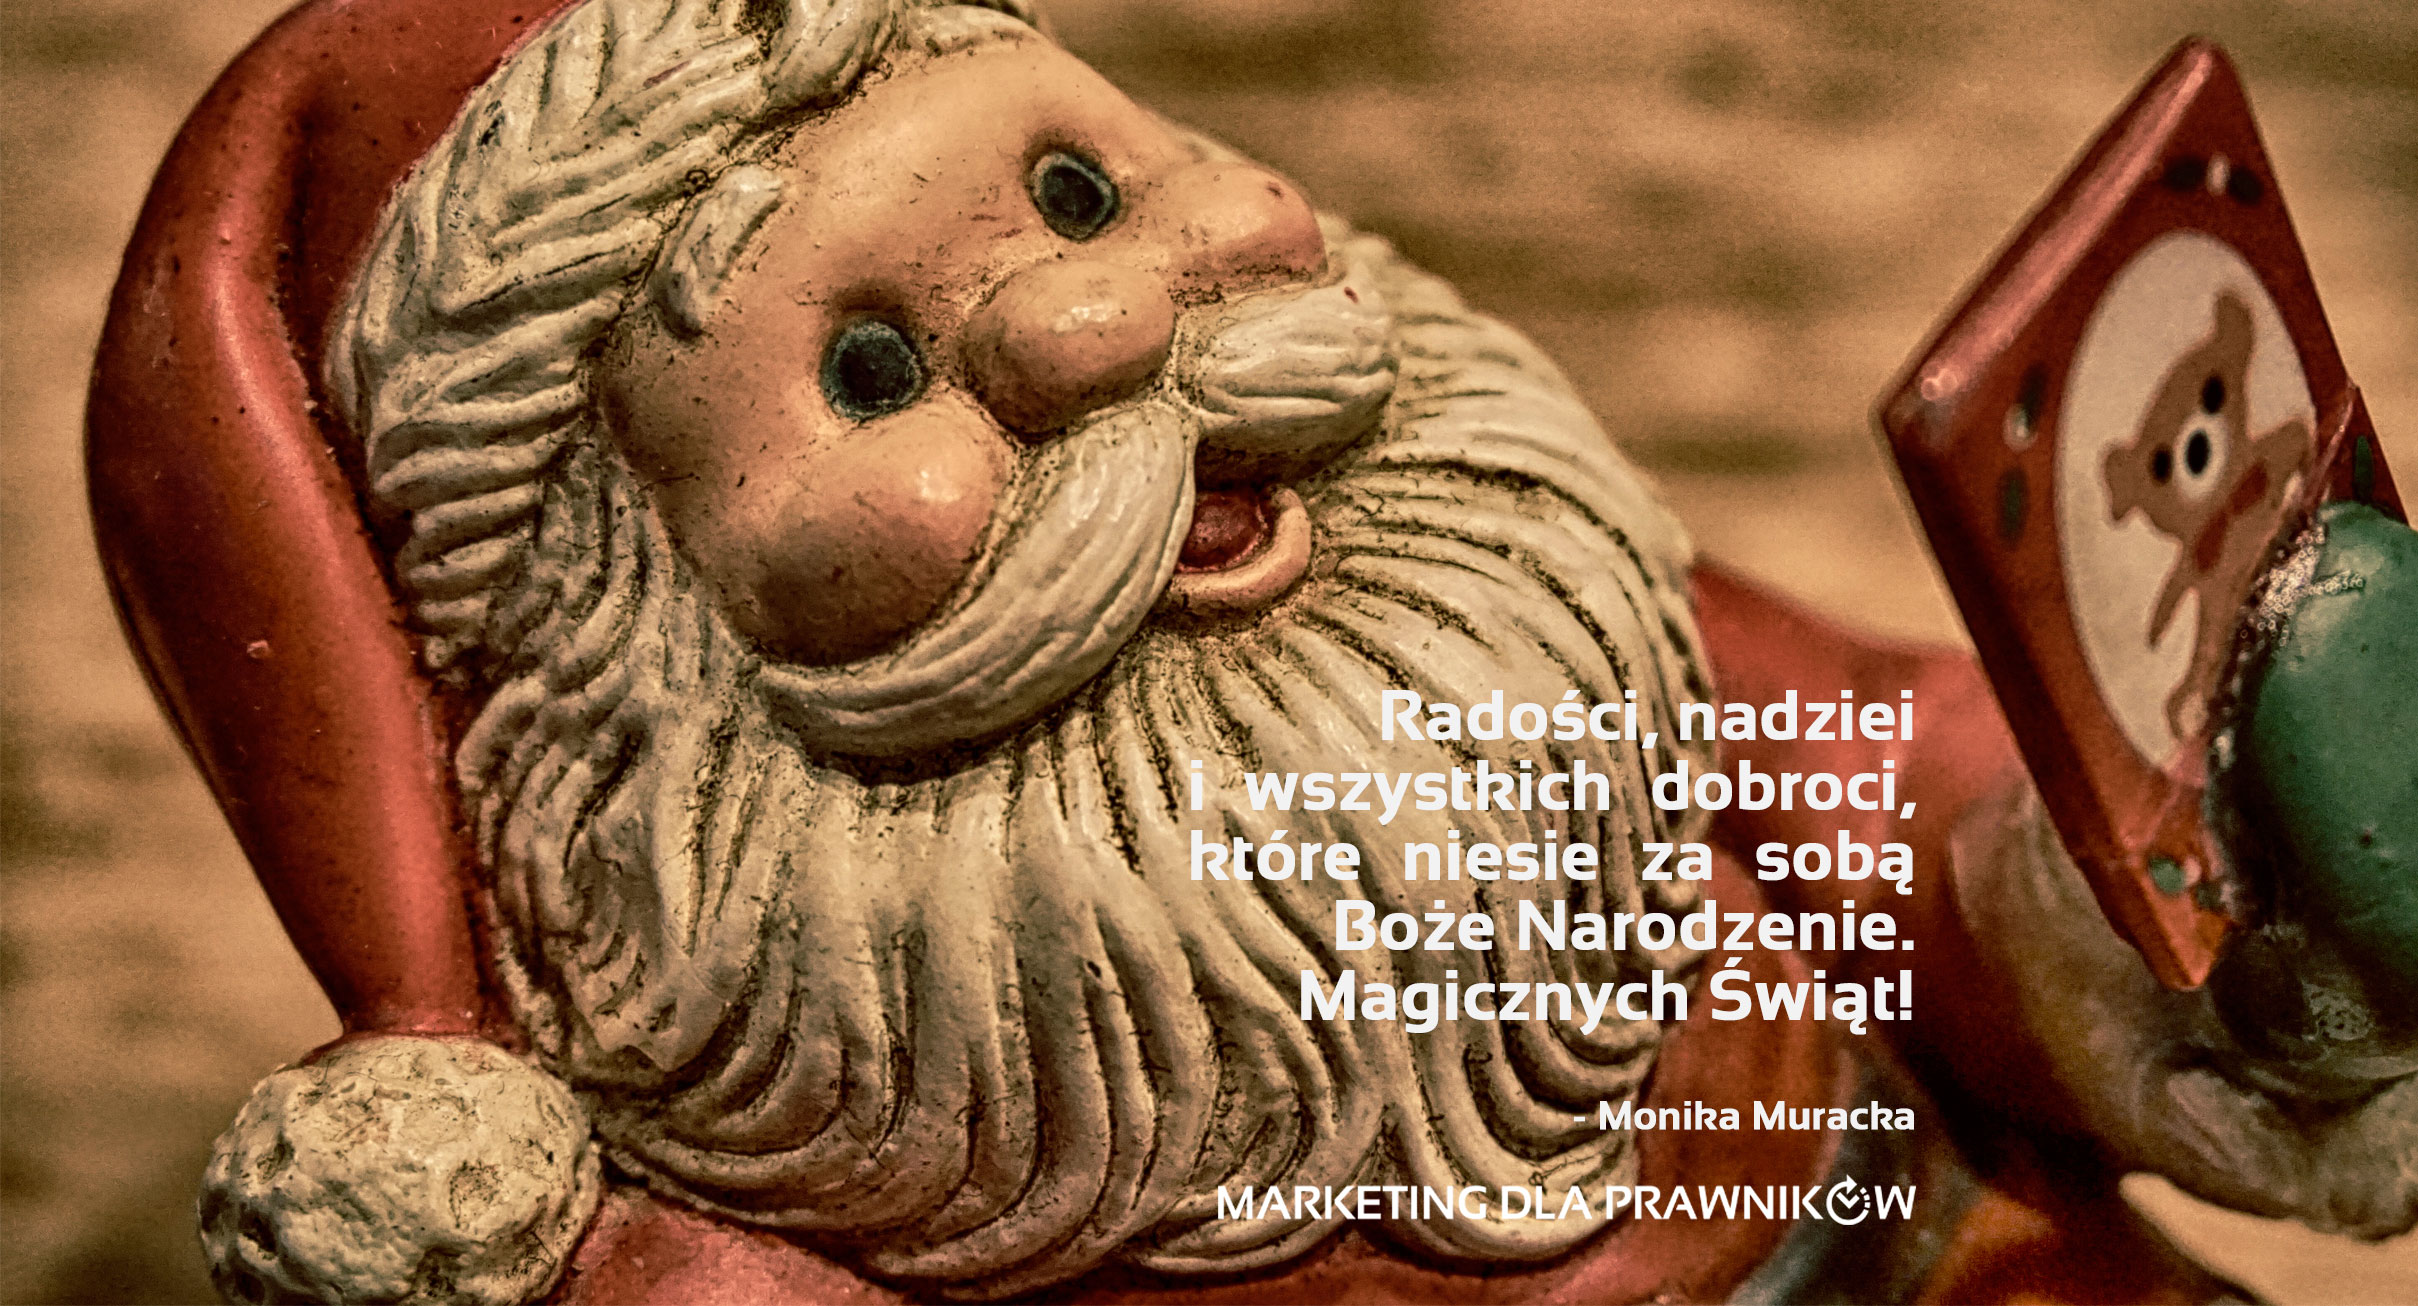 Magicznych Świąt od Marketing dla prawników by Monika Muracka